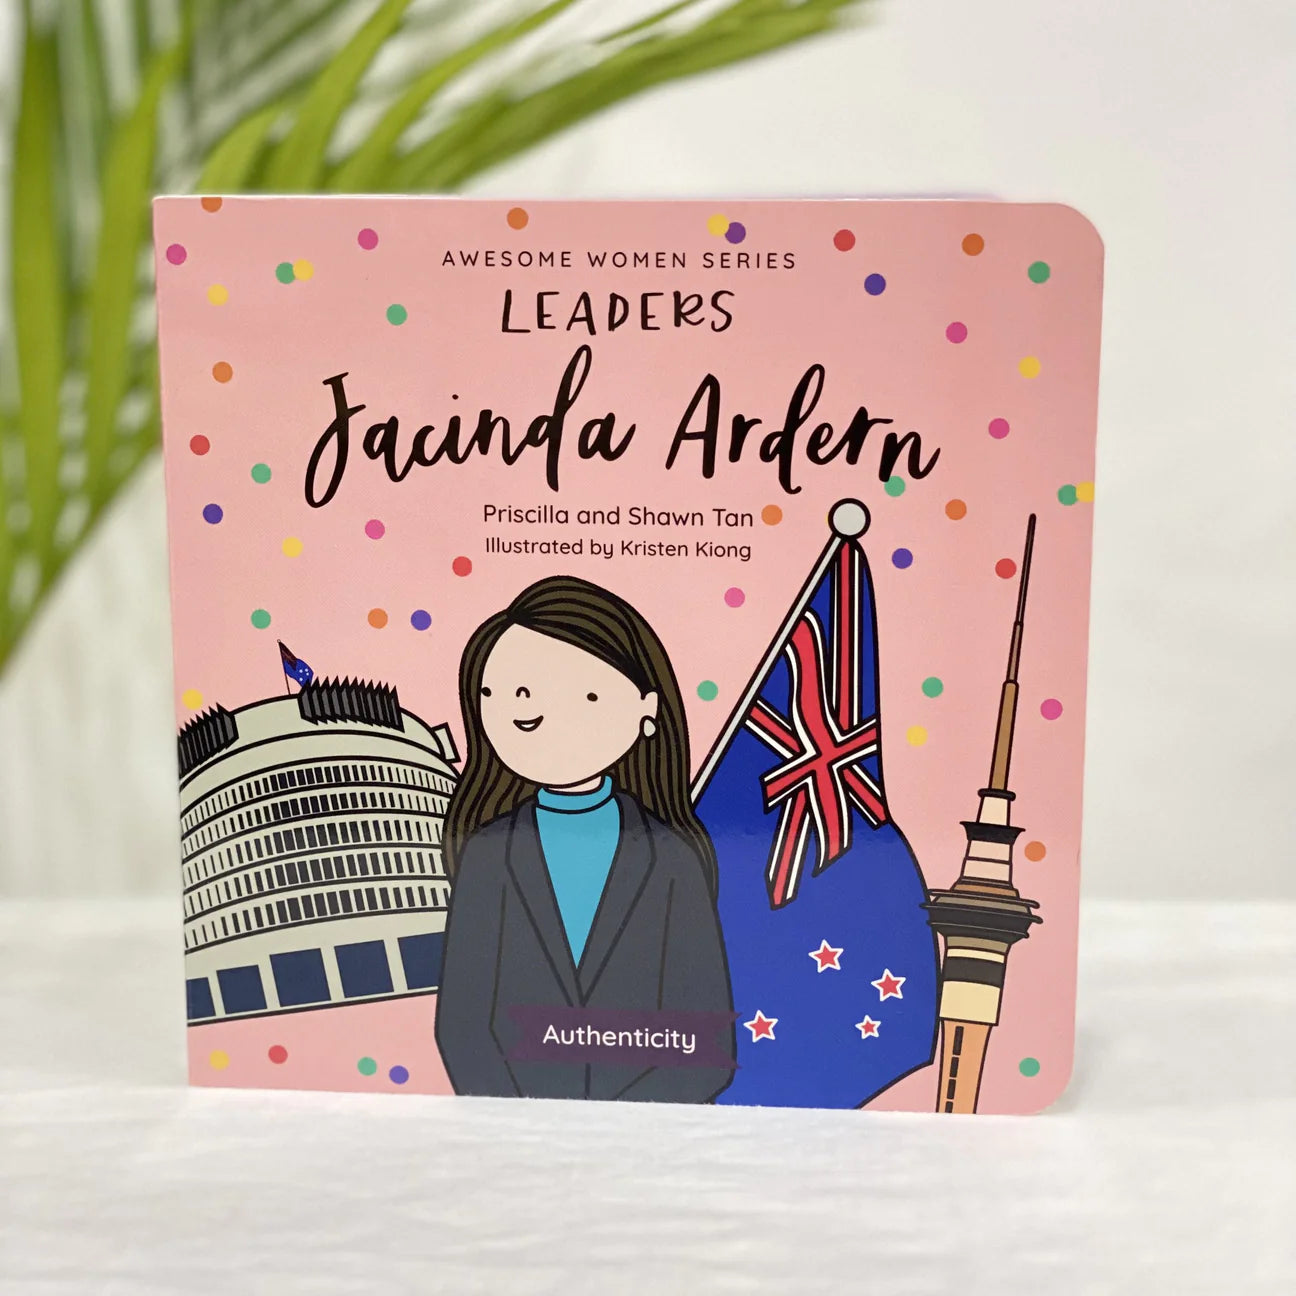 Awesome Women Series Leaders | Jacinda Ardern